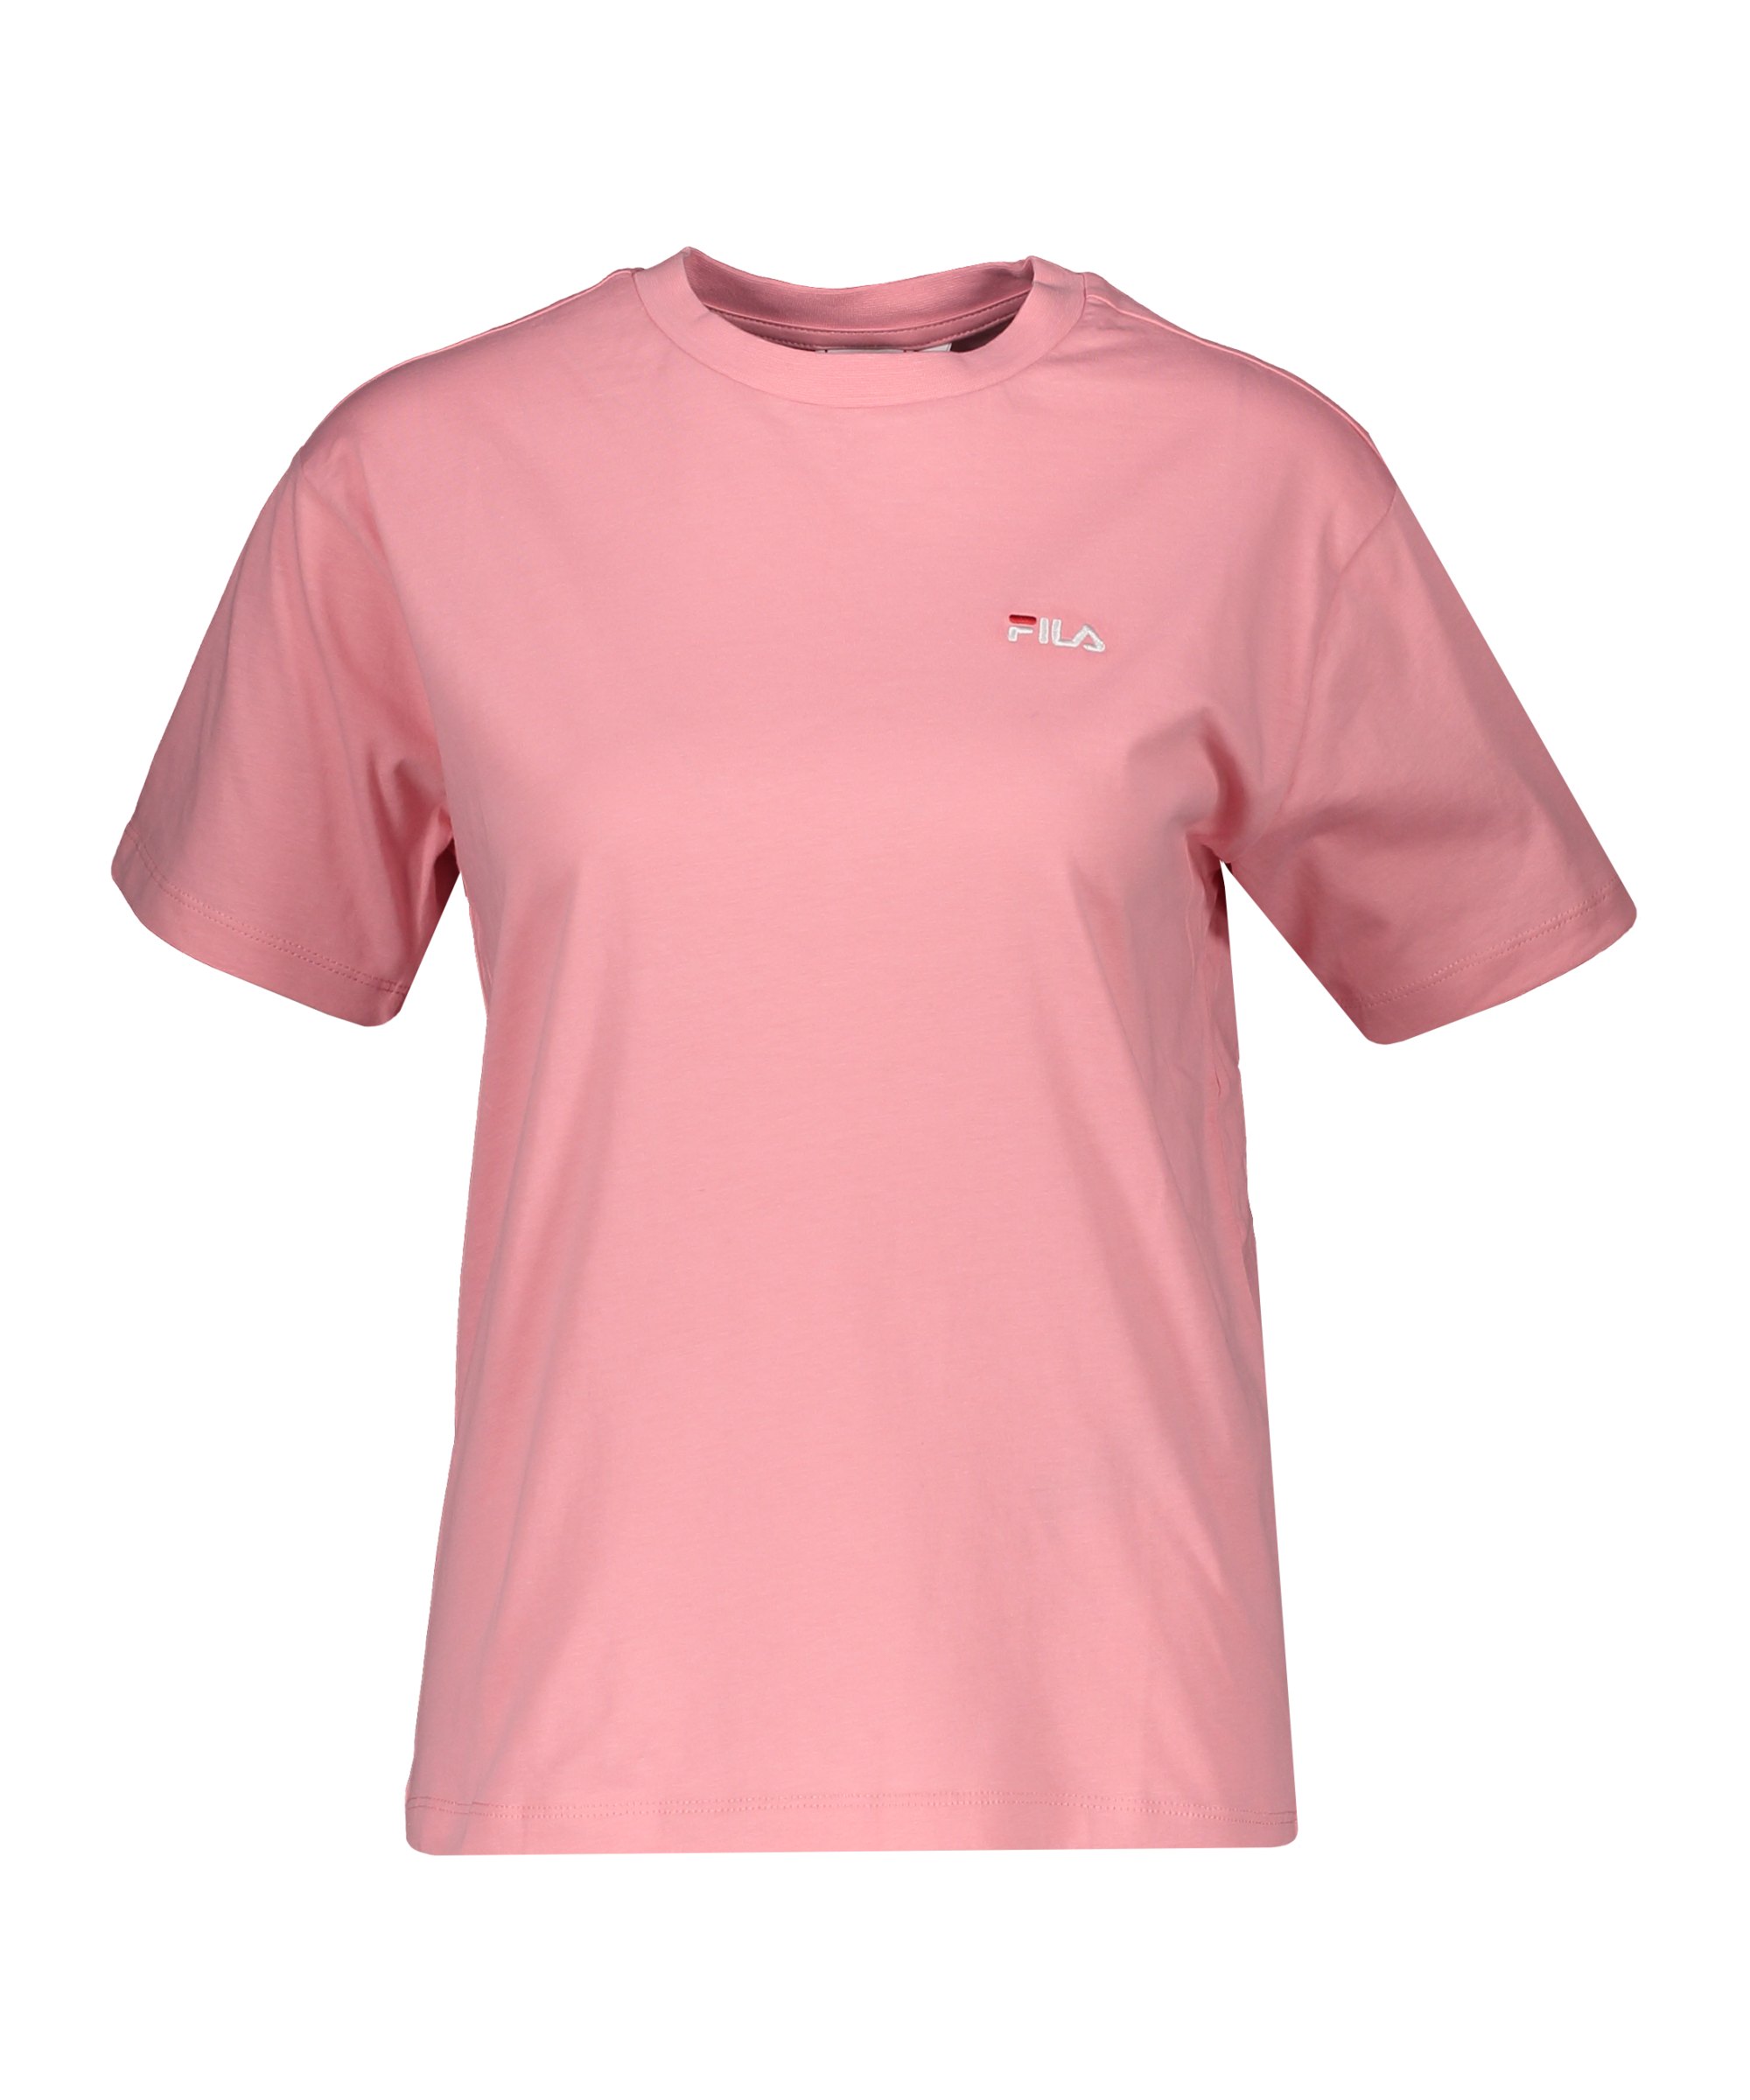 FILA Efrat T-Shirt Damen Rosa - rosa